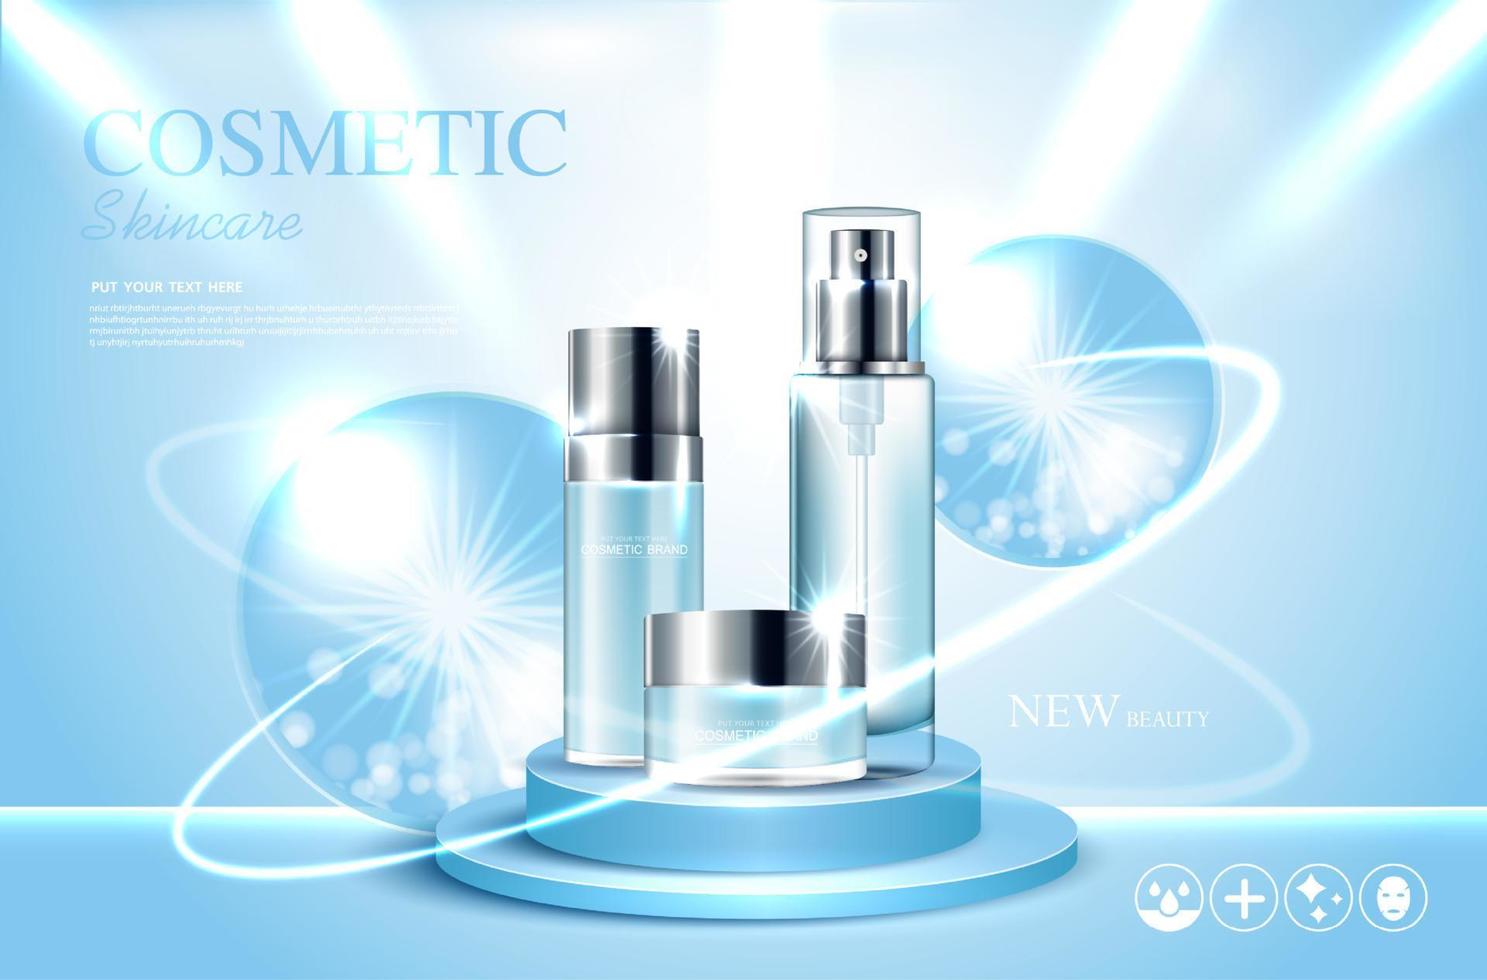 kosmetika eller hudvårdsprodukter annonser med flaska och blå bakgrund glittrande ljuseffekt. vektor illustration design eps10.